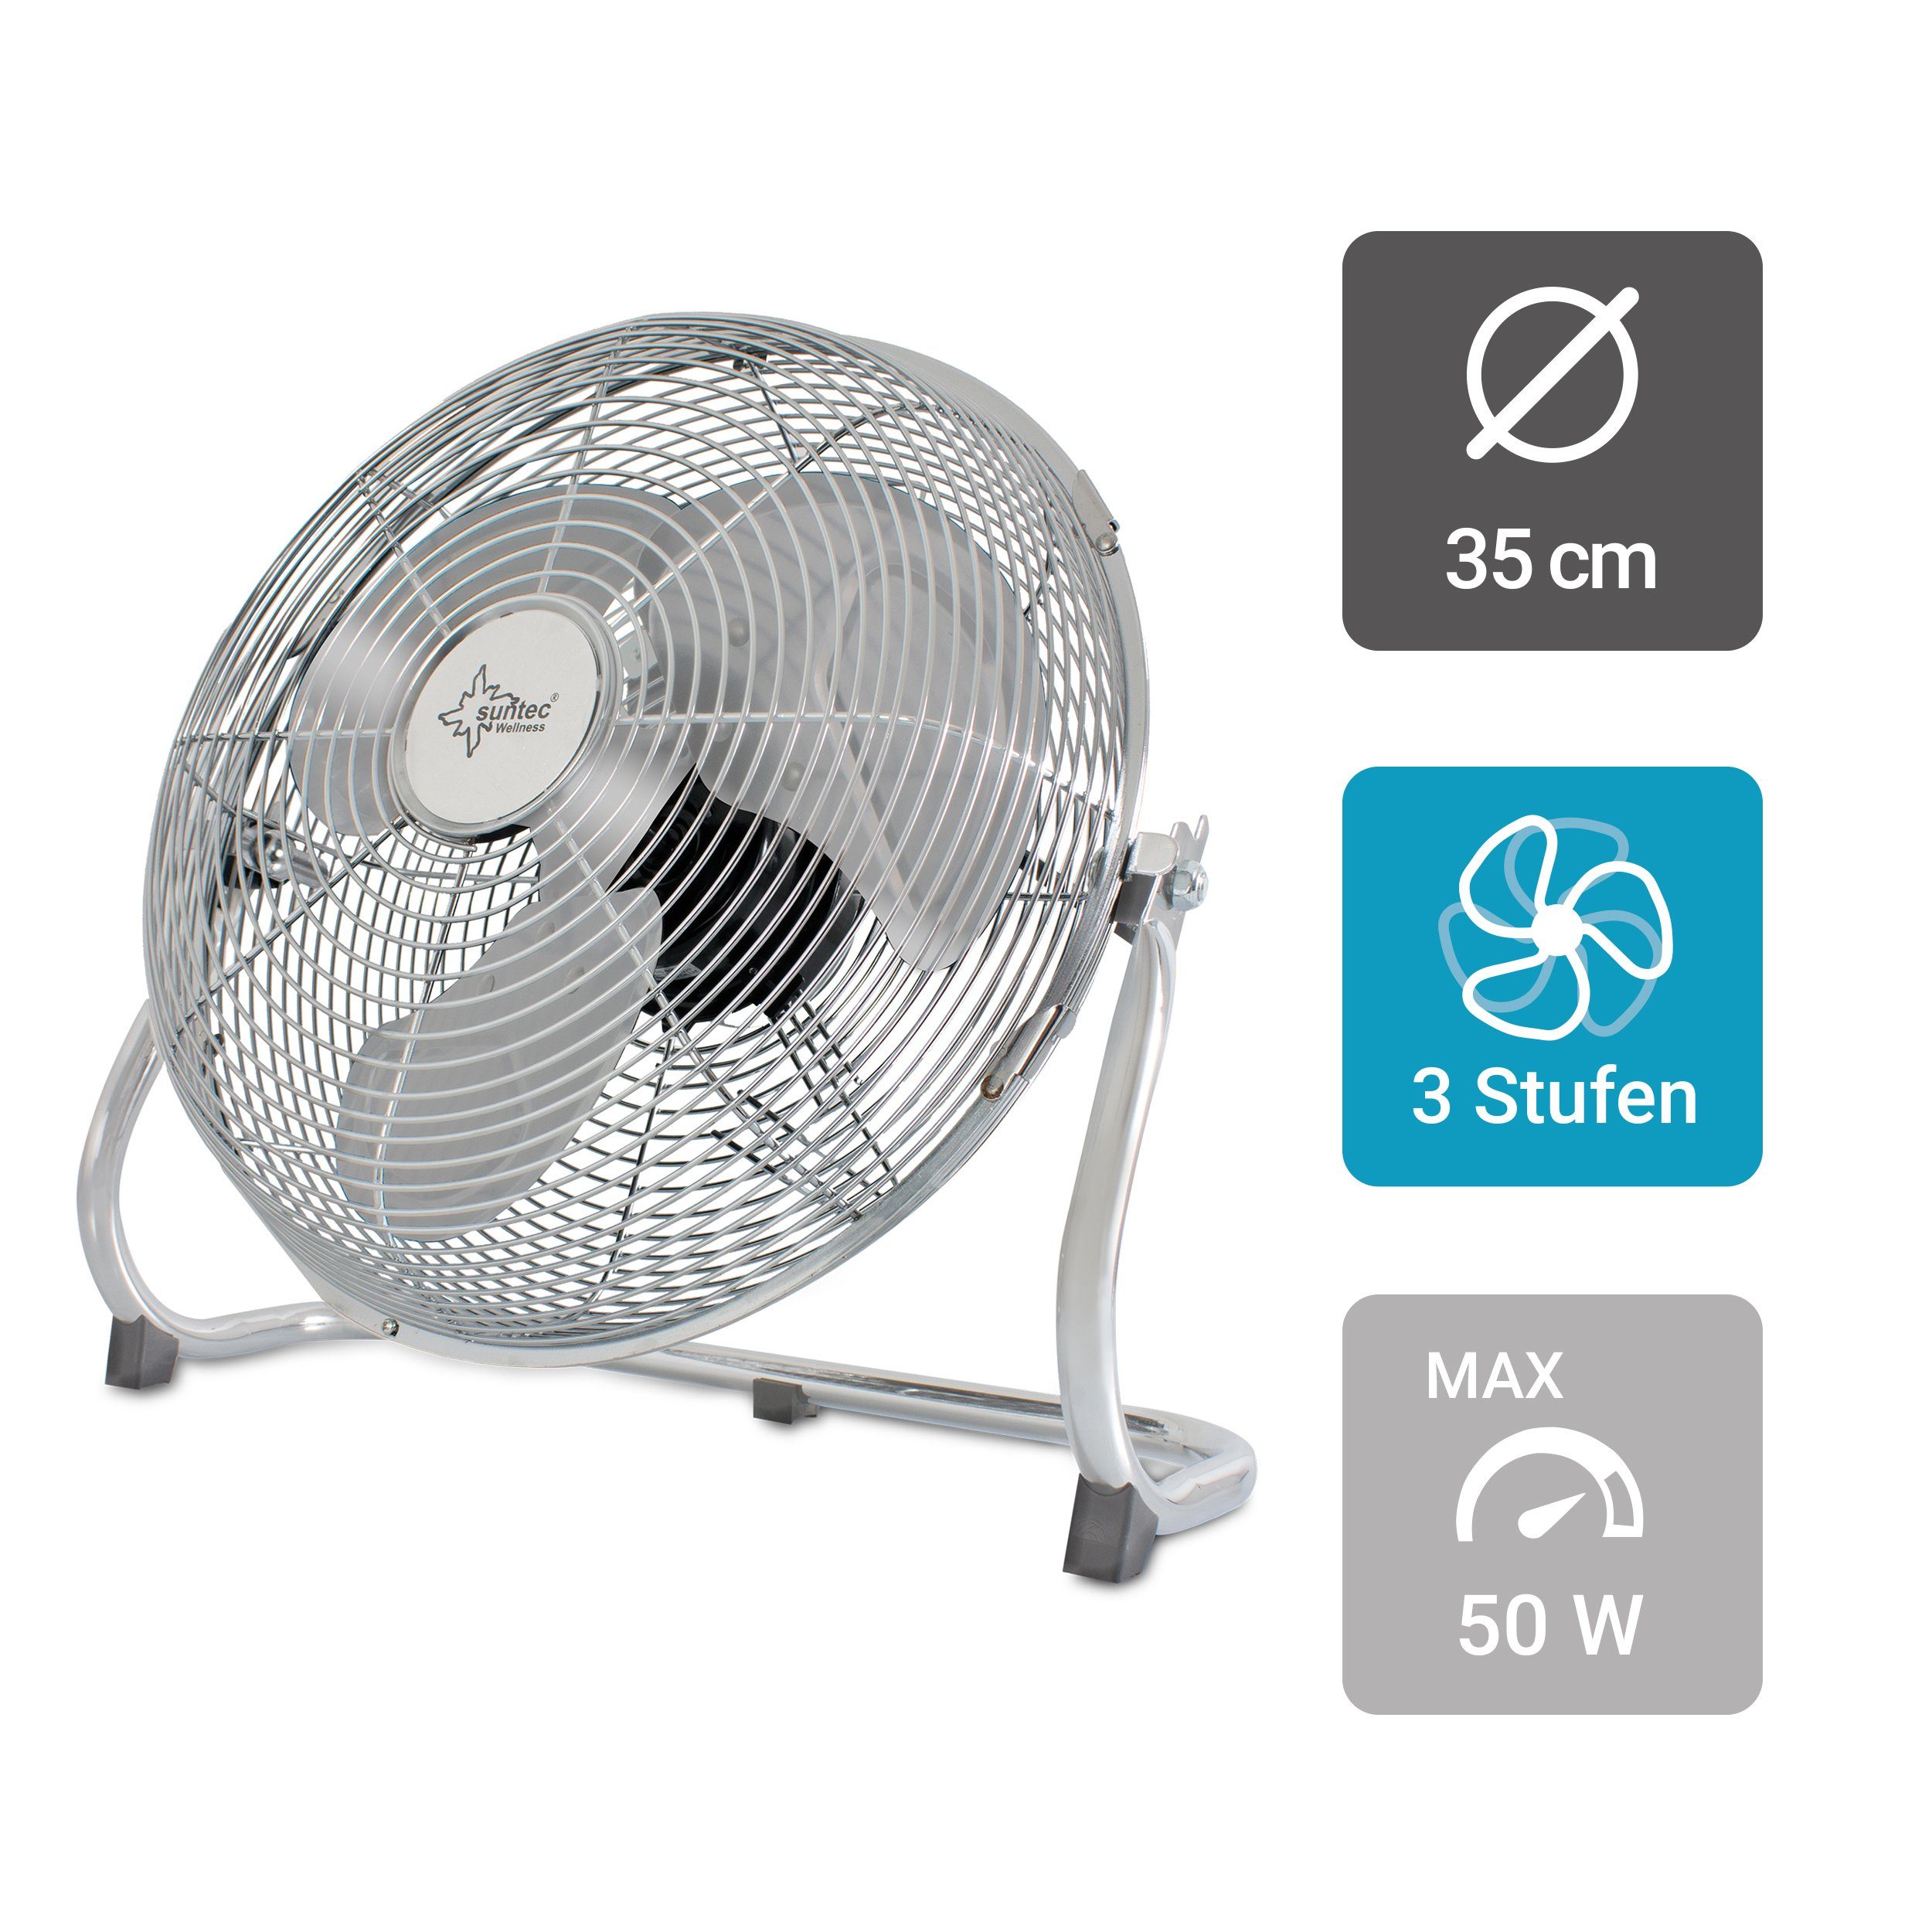 Suntec Wellness Bodenventilator CoolBreeze 3500 BV, Ventilator inkl. Neigungswinkel, Fan, 50 Watt